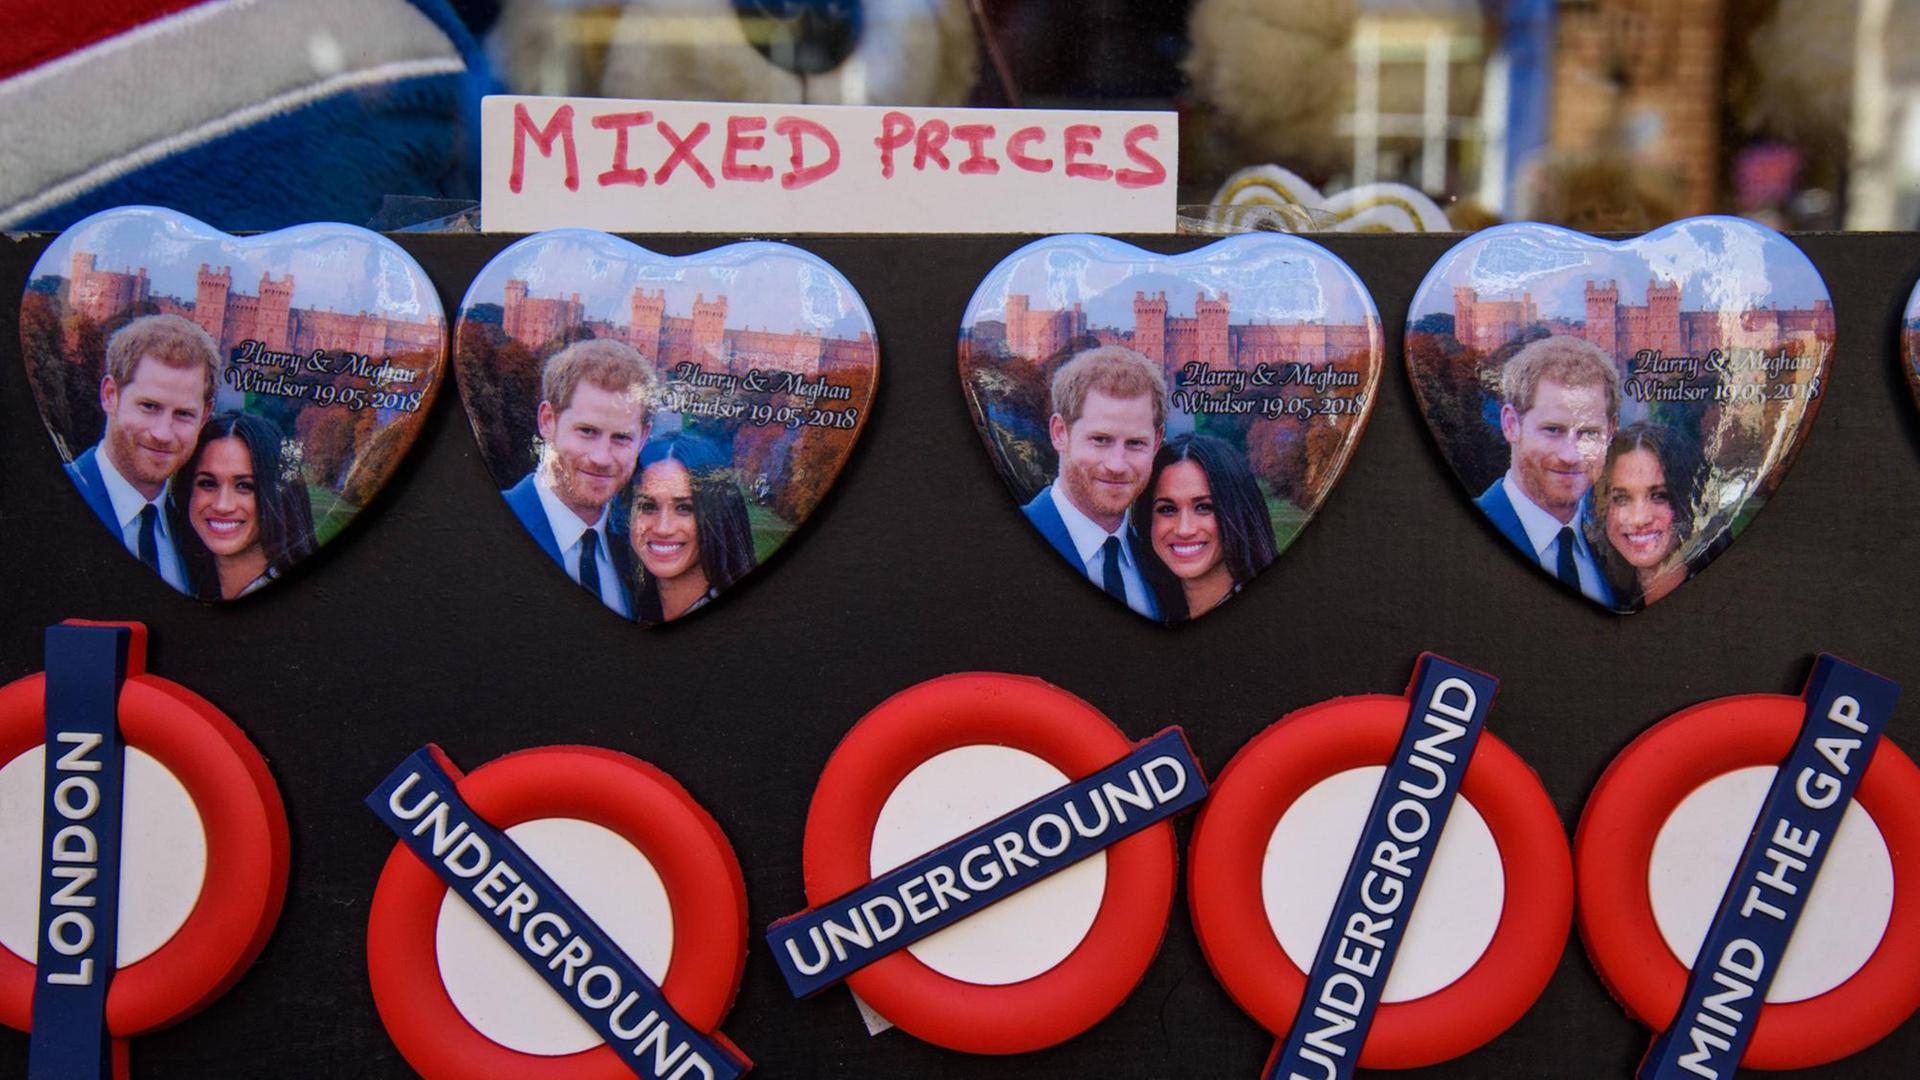 Magnete in Herzform mit dem Bild von Meghan Markle und Prinz Harry. Darunter Magnete mit dem Logo der Londoner U-Bahn.